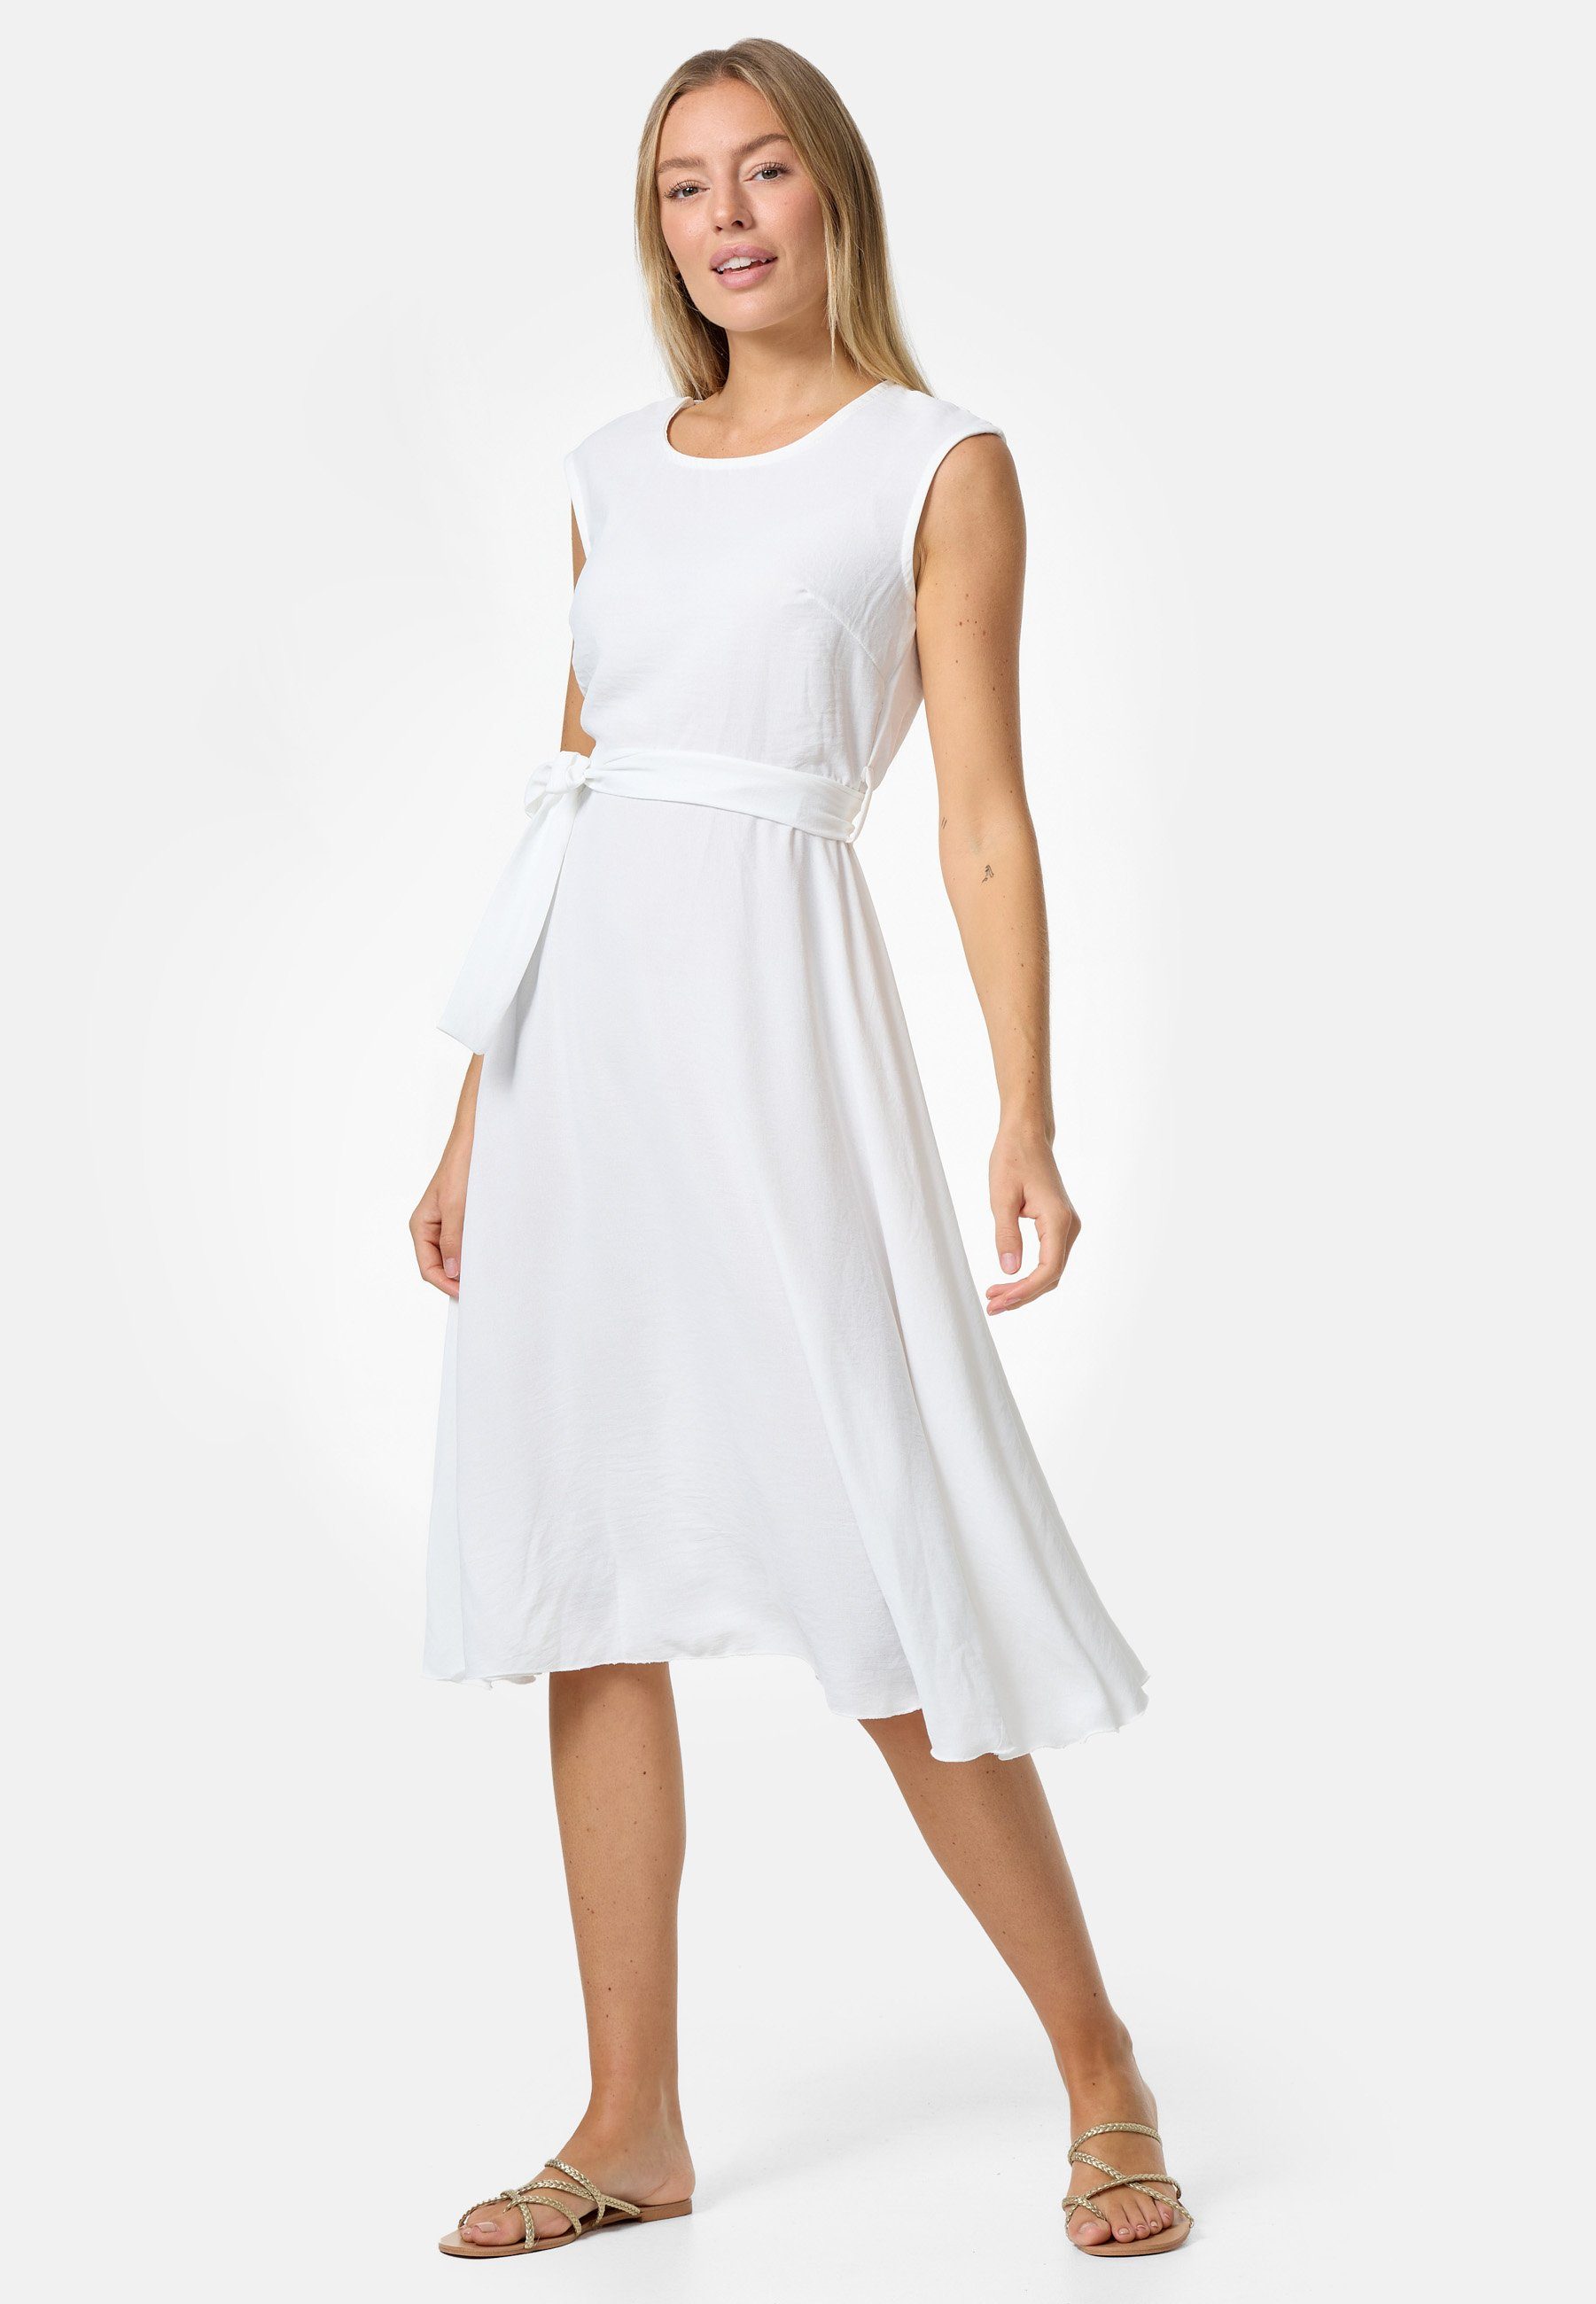 PM SELECTED Midikleid PM-26 (Ärmelloses Sommerkleid Dress mit Bindeband in Einheitsgröße) Weiß